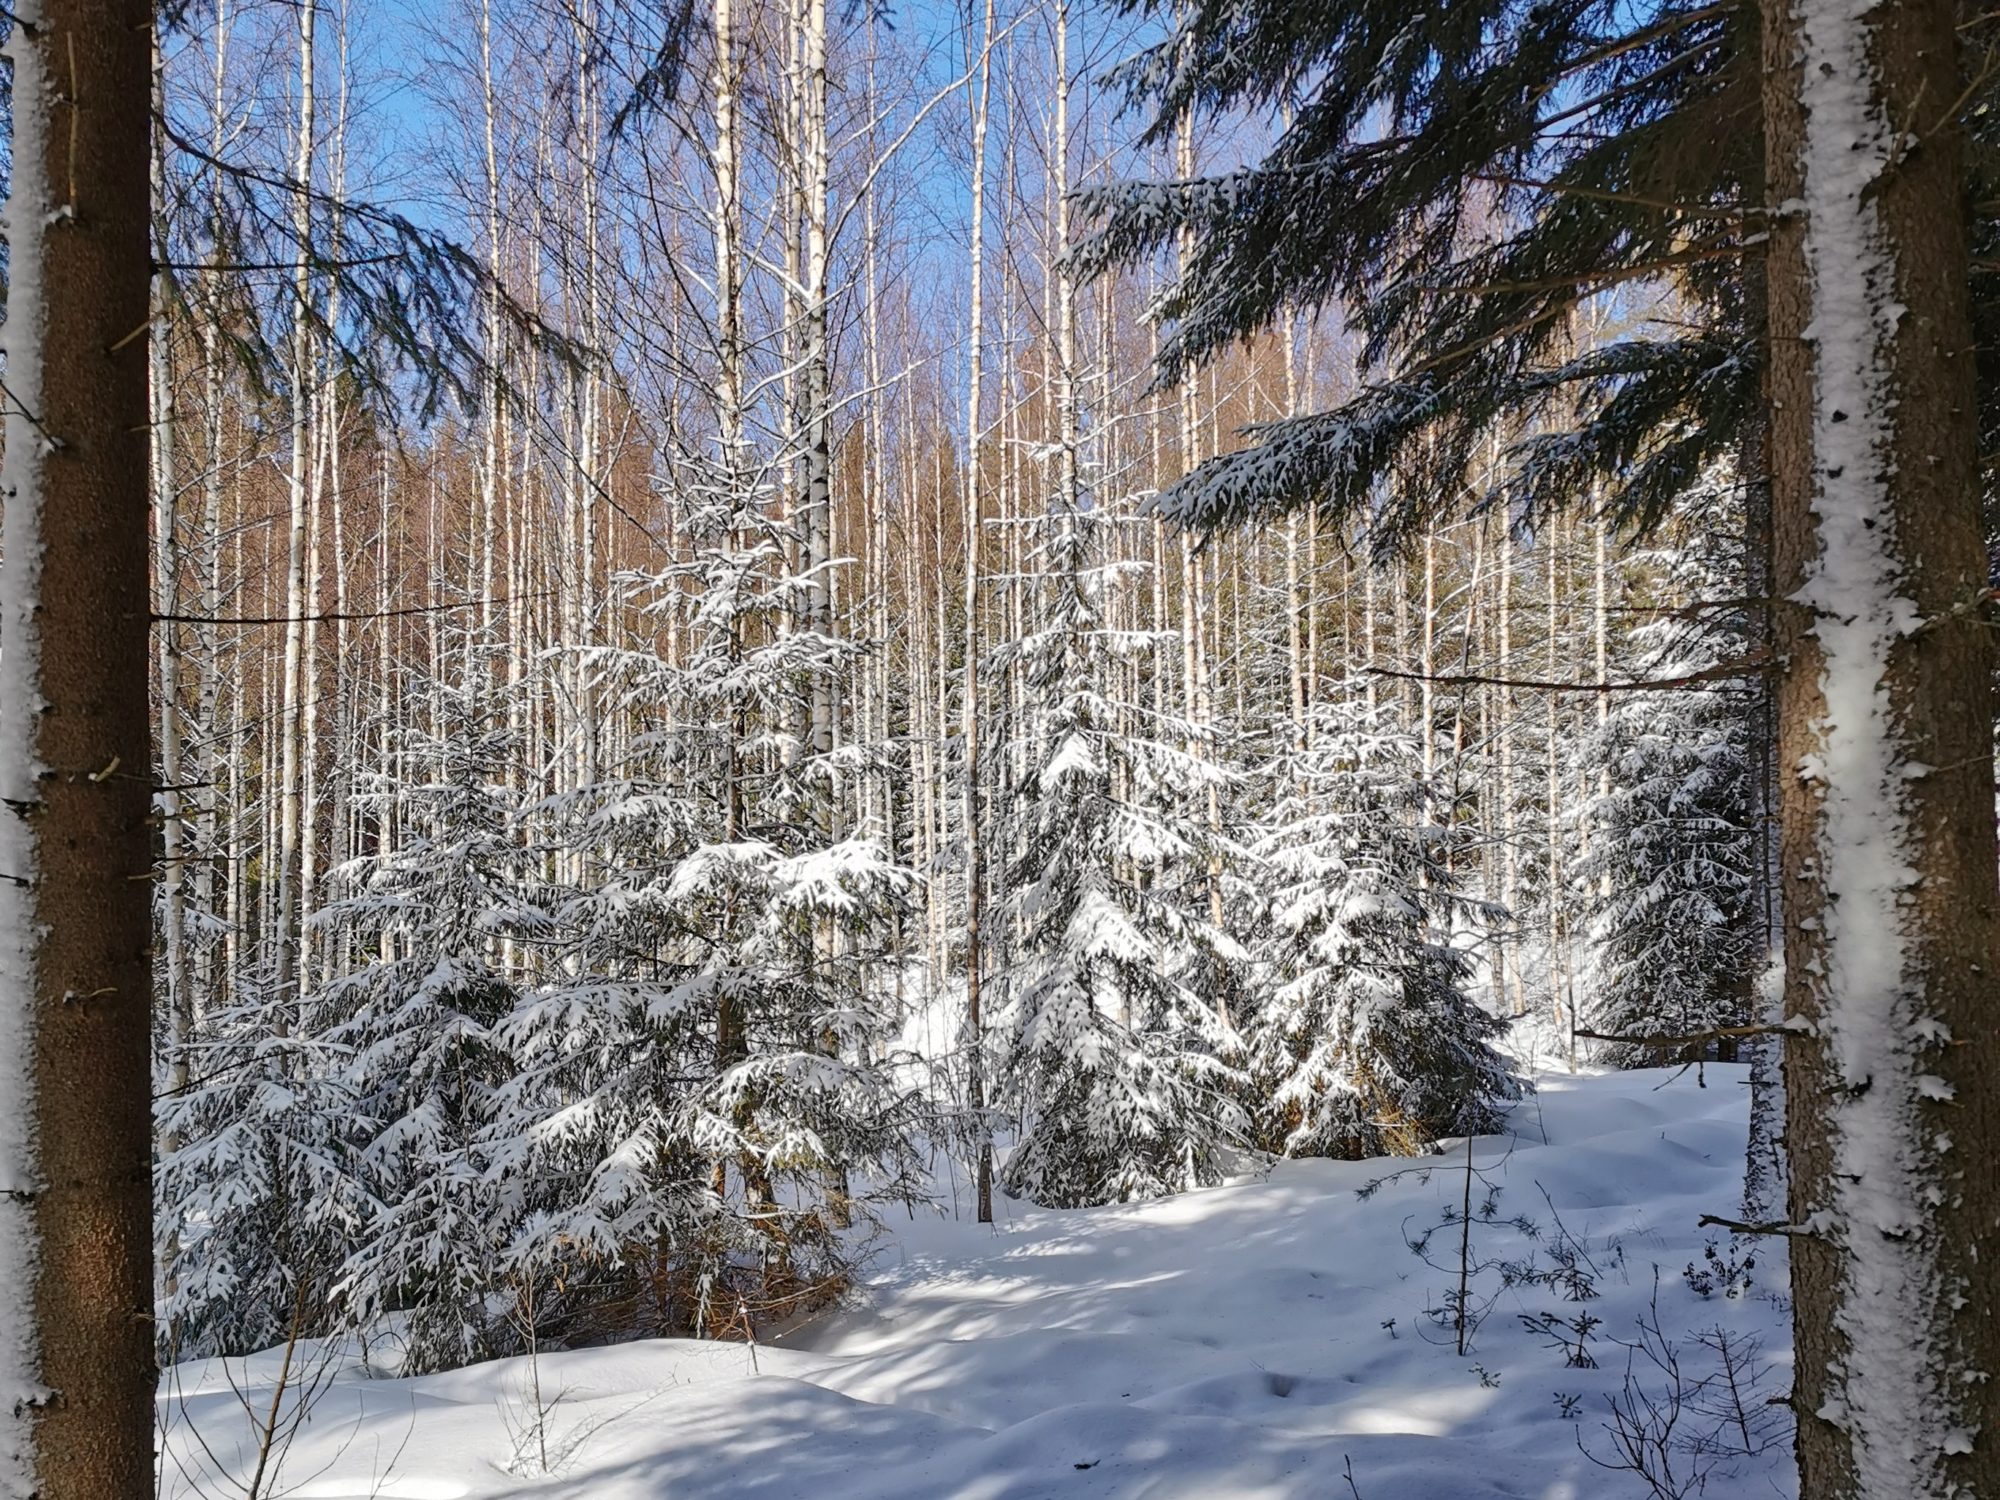 Orrainpolku trail in winter